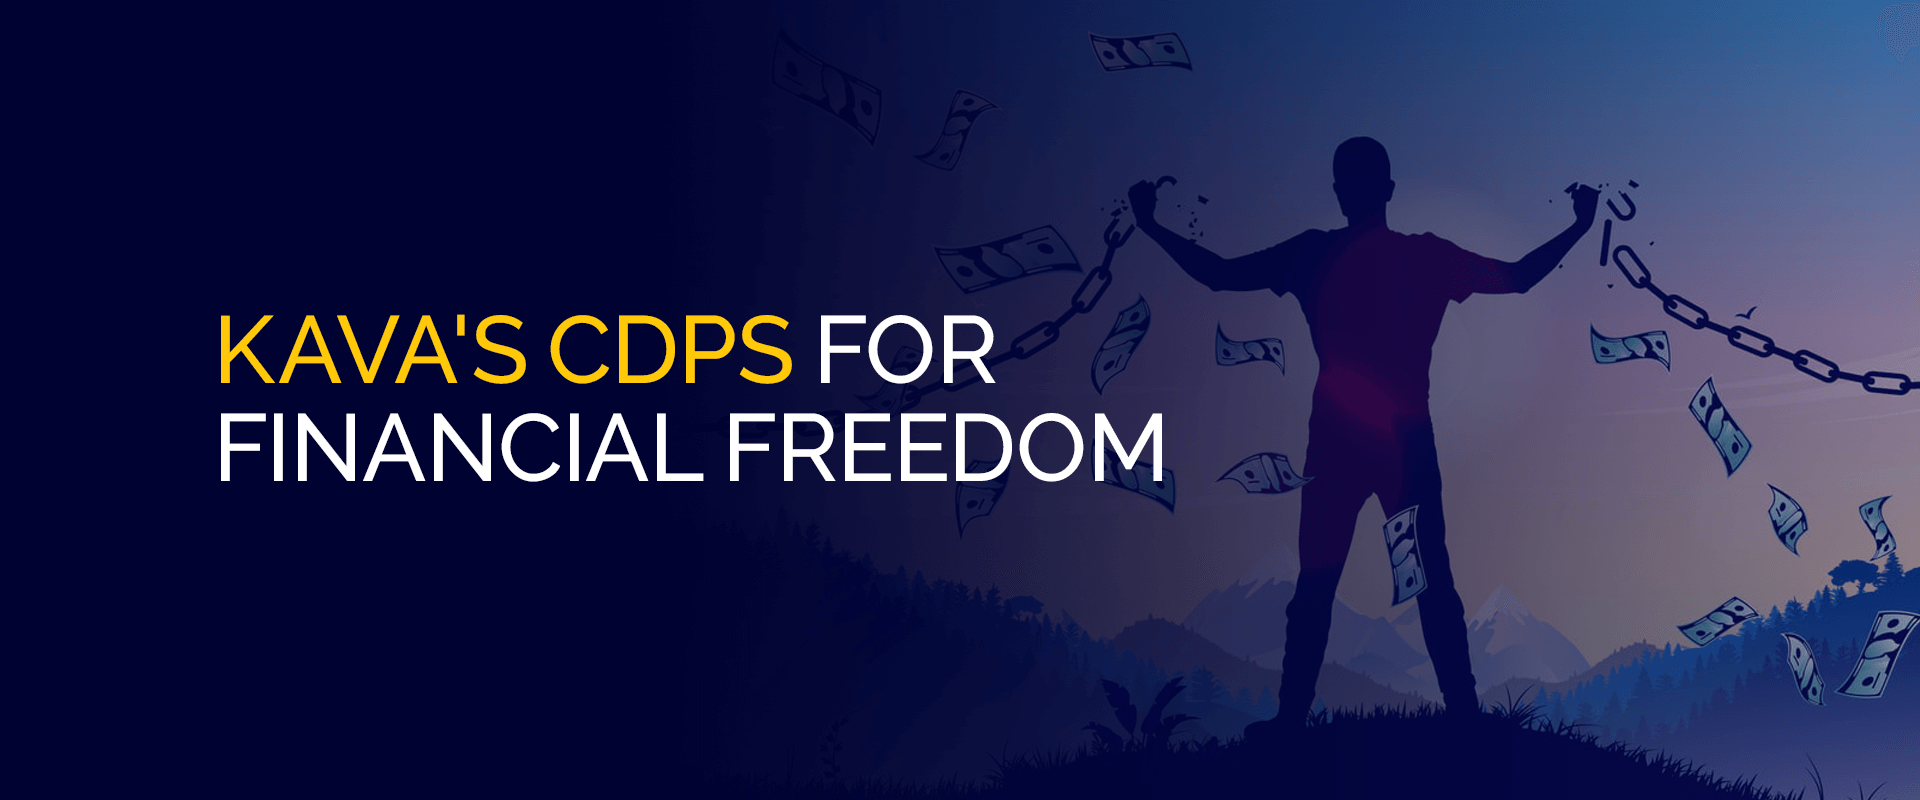 CDPs da Kava para Liberdade Financeira